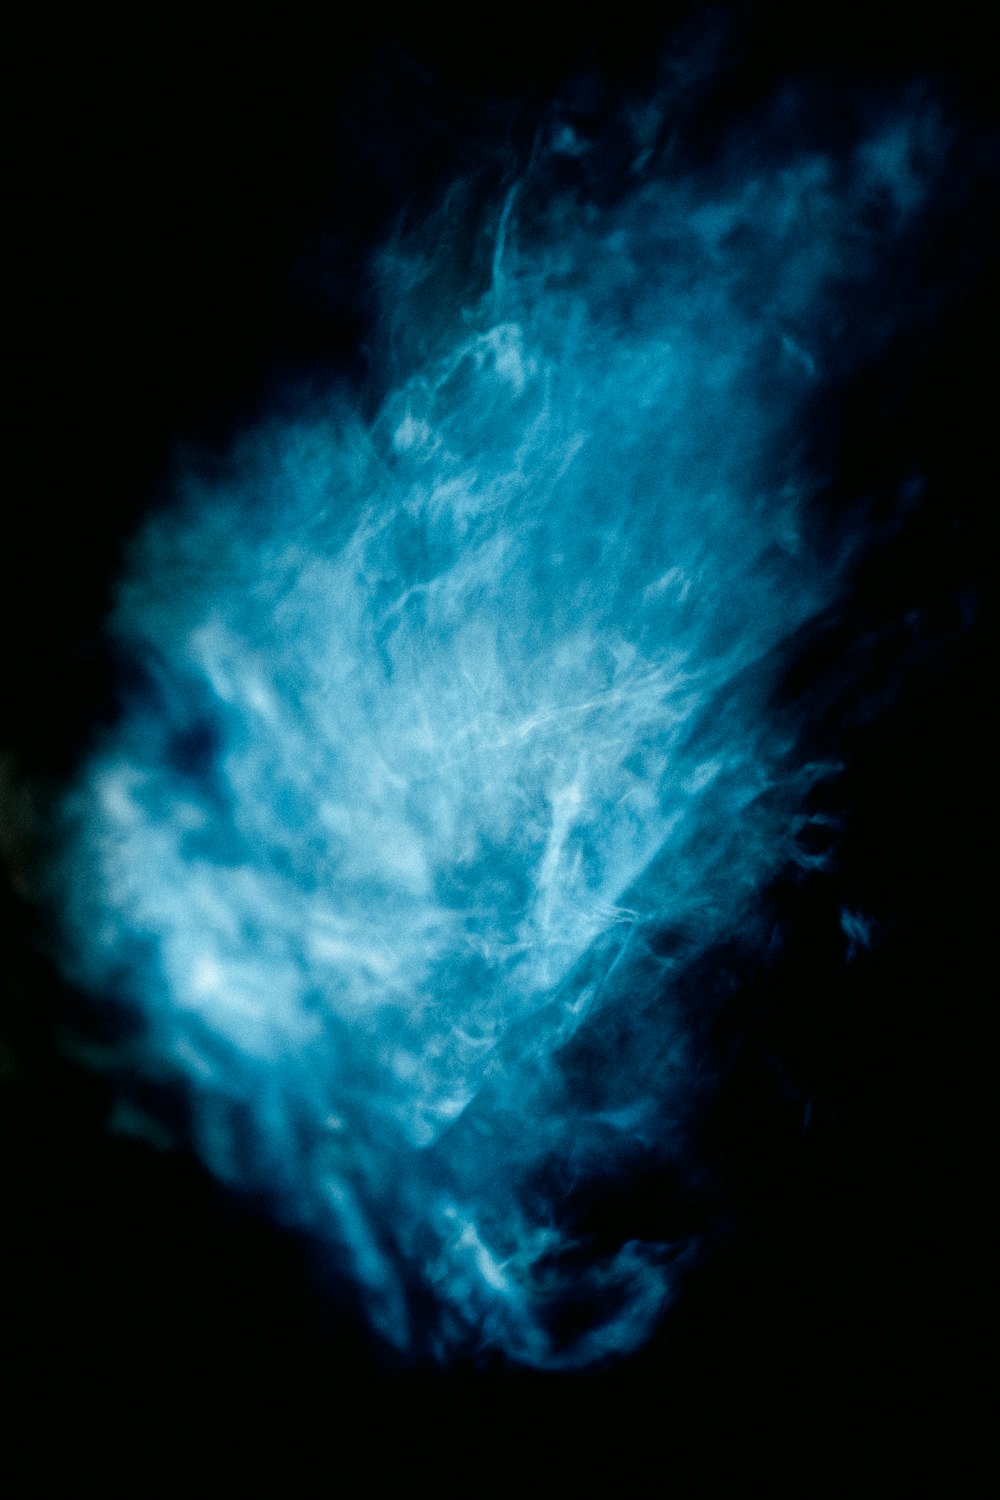 blue and white lightning on black background photo – Free Blue Image on  Unsplash